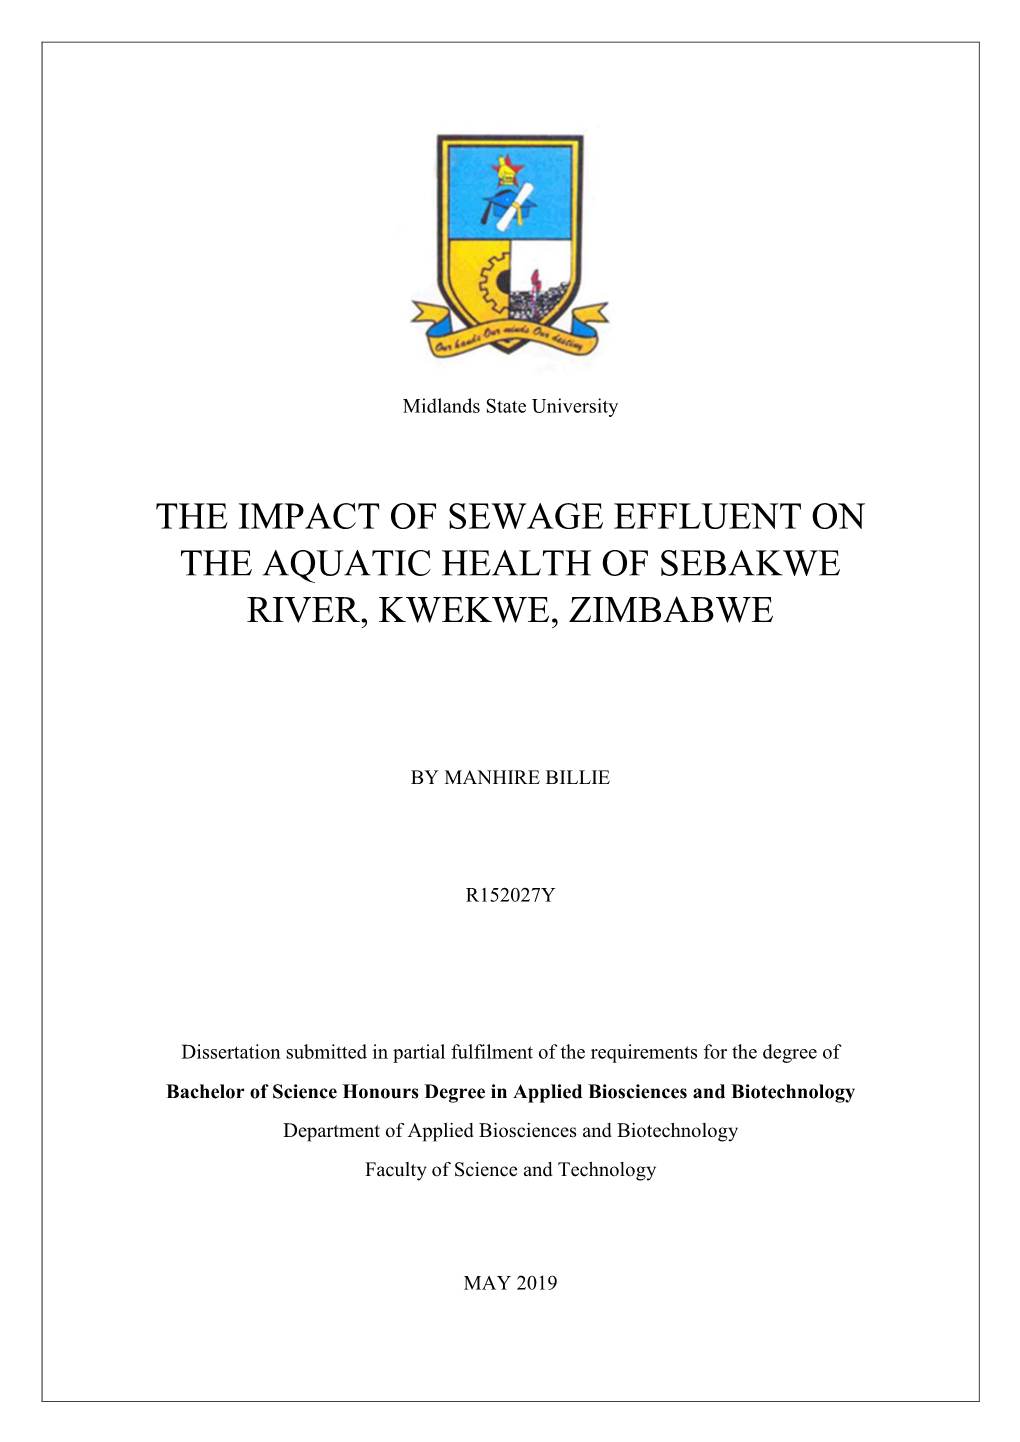 The Impact of Sewage Effluent on the Aquatic Health of Sebakwe River, Kwekwe, Zimbabwe